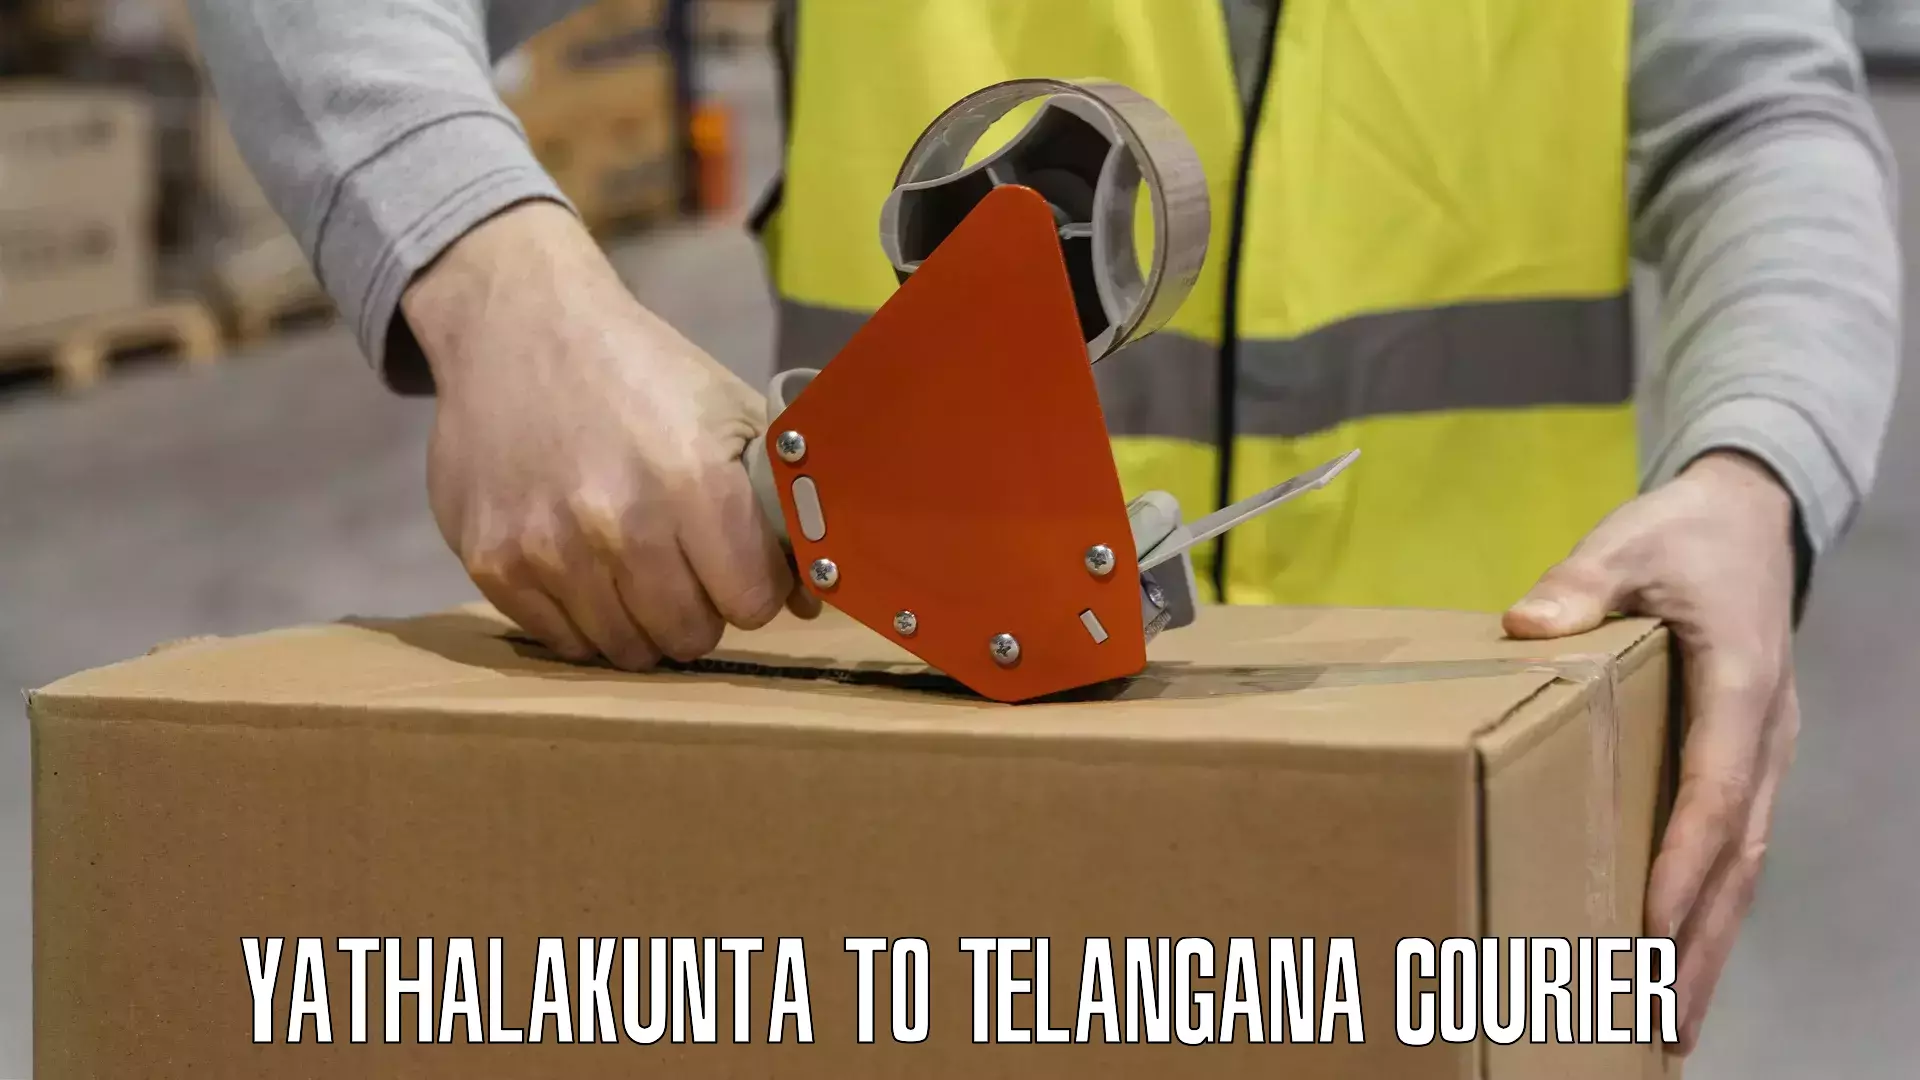 Efficient shipping platforms Yathalakunta to Telangana